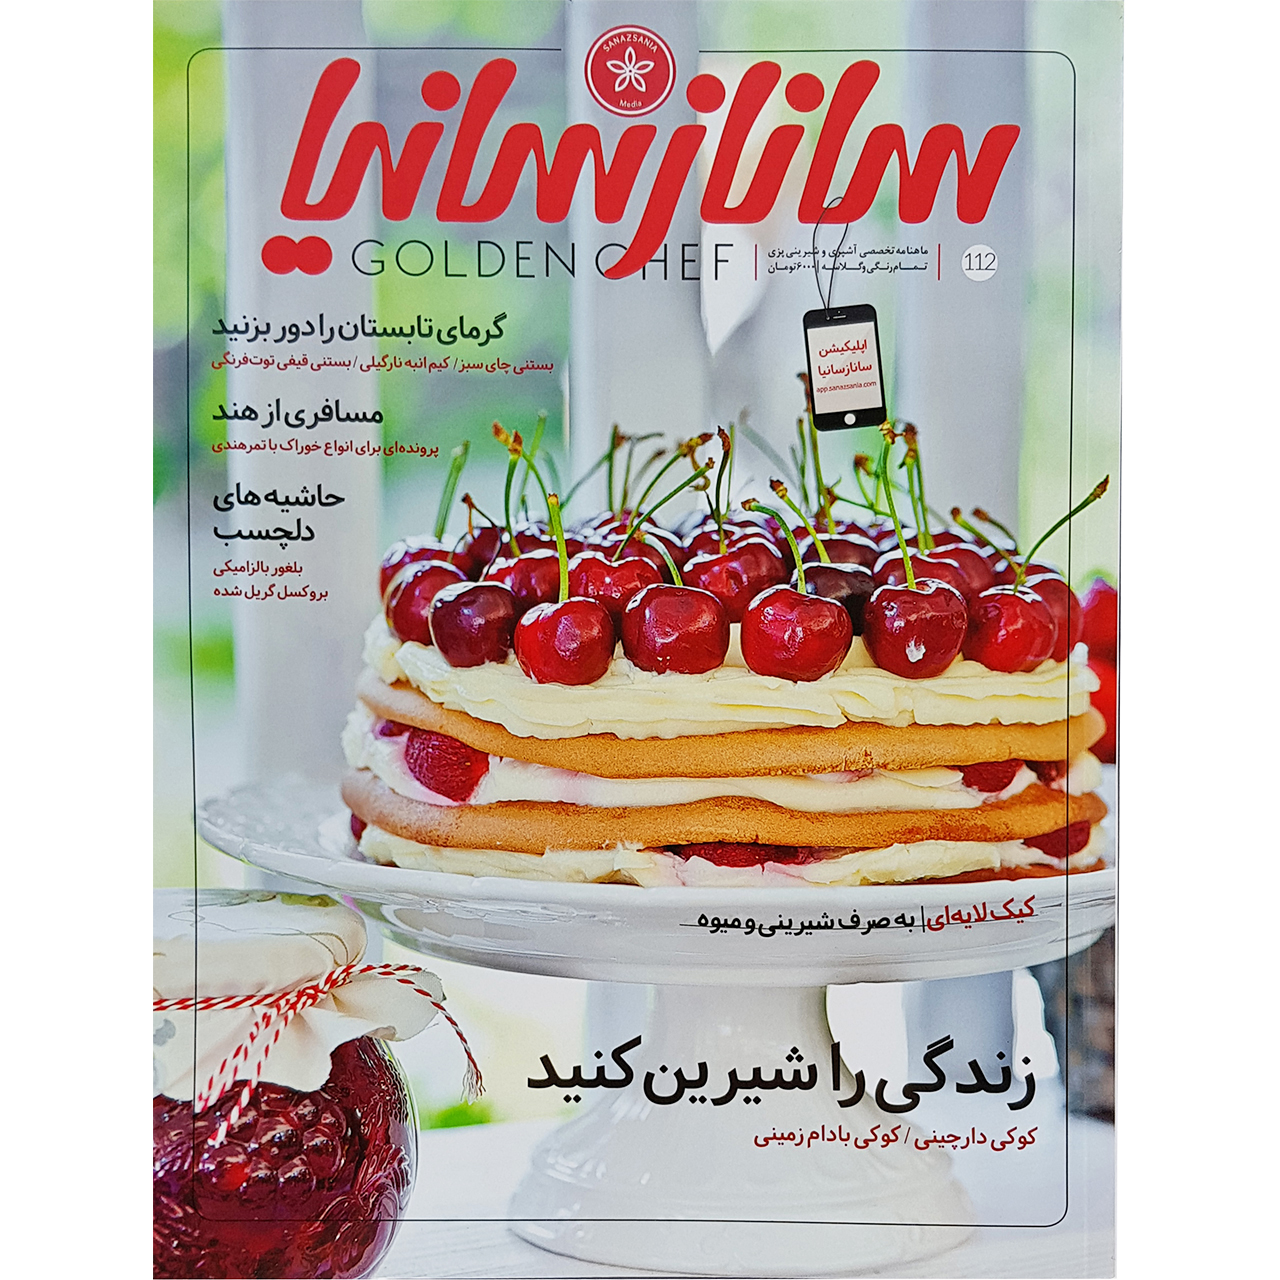 ماهنامه تخصصی آشپزی و شیرینی پزی ساناز سانیا شماره 112